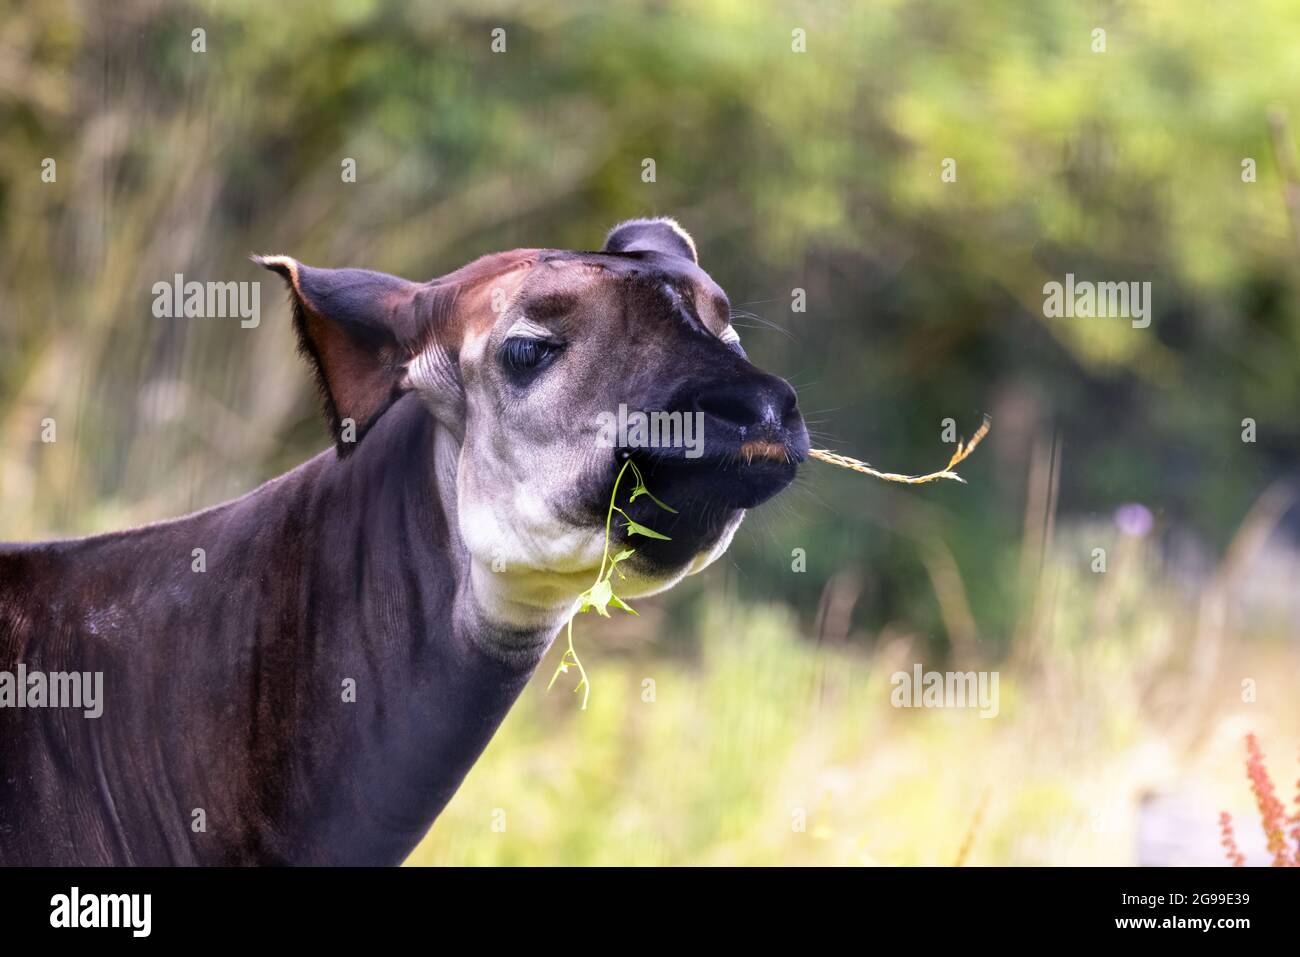 Okapi adulte, okapia johnstoni, également connu sous le nom de girafe forestière, girafe congolaise, ou girafe zébrée, paissant sur un feuillage luxuriant. Cette espèce est en fin de gamme Banque D'Images